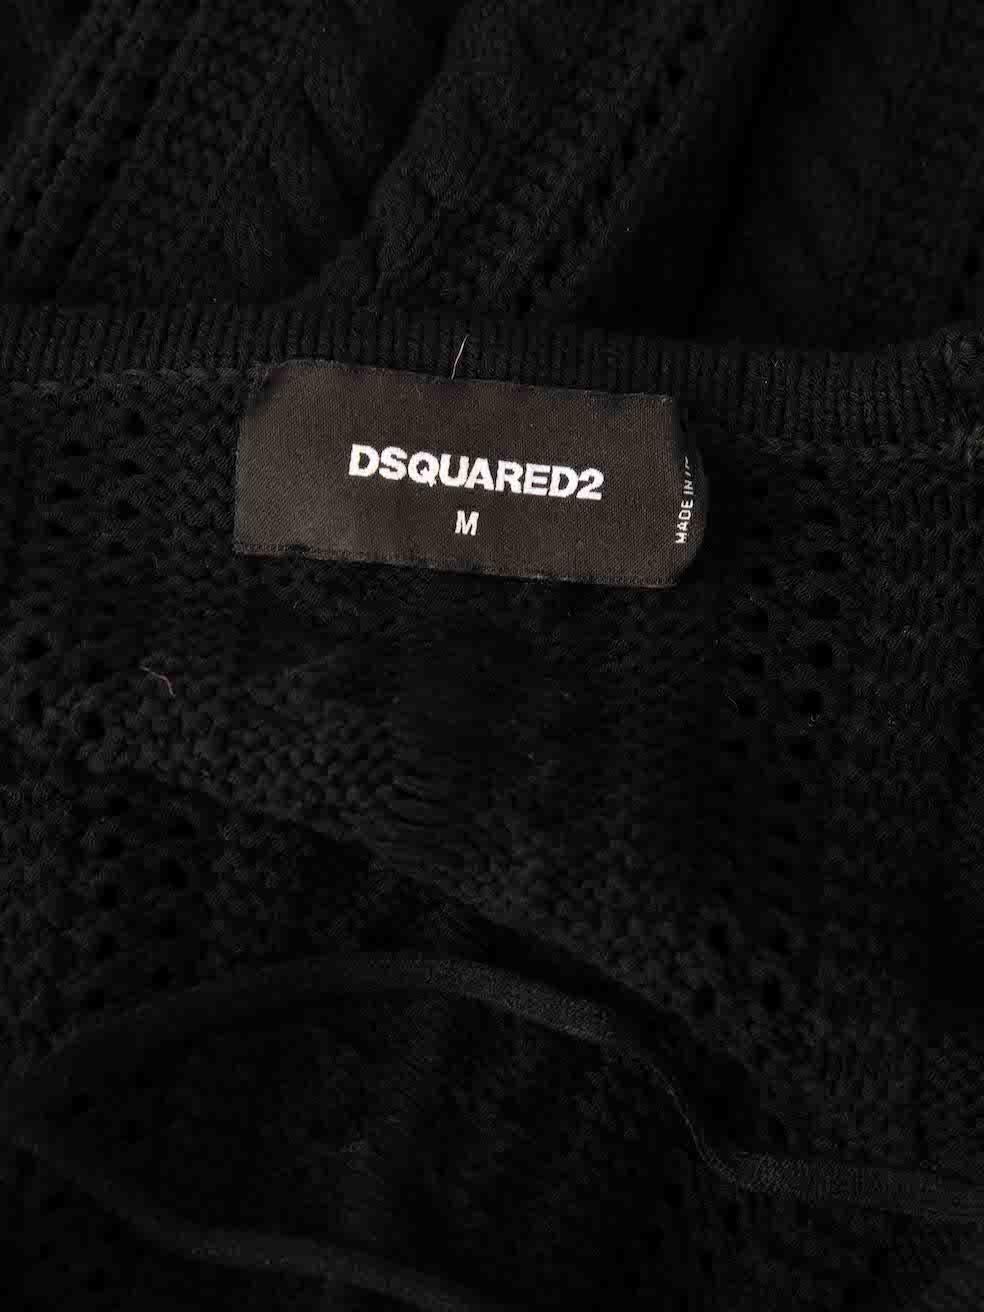 Women's Dsquared2 Black Lace-Up Front Knit Mini Dress Size M For Sale